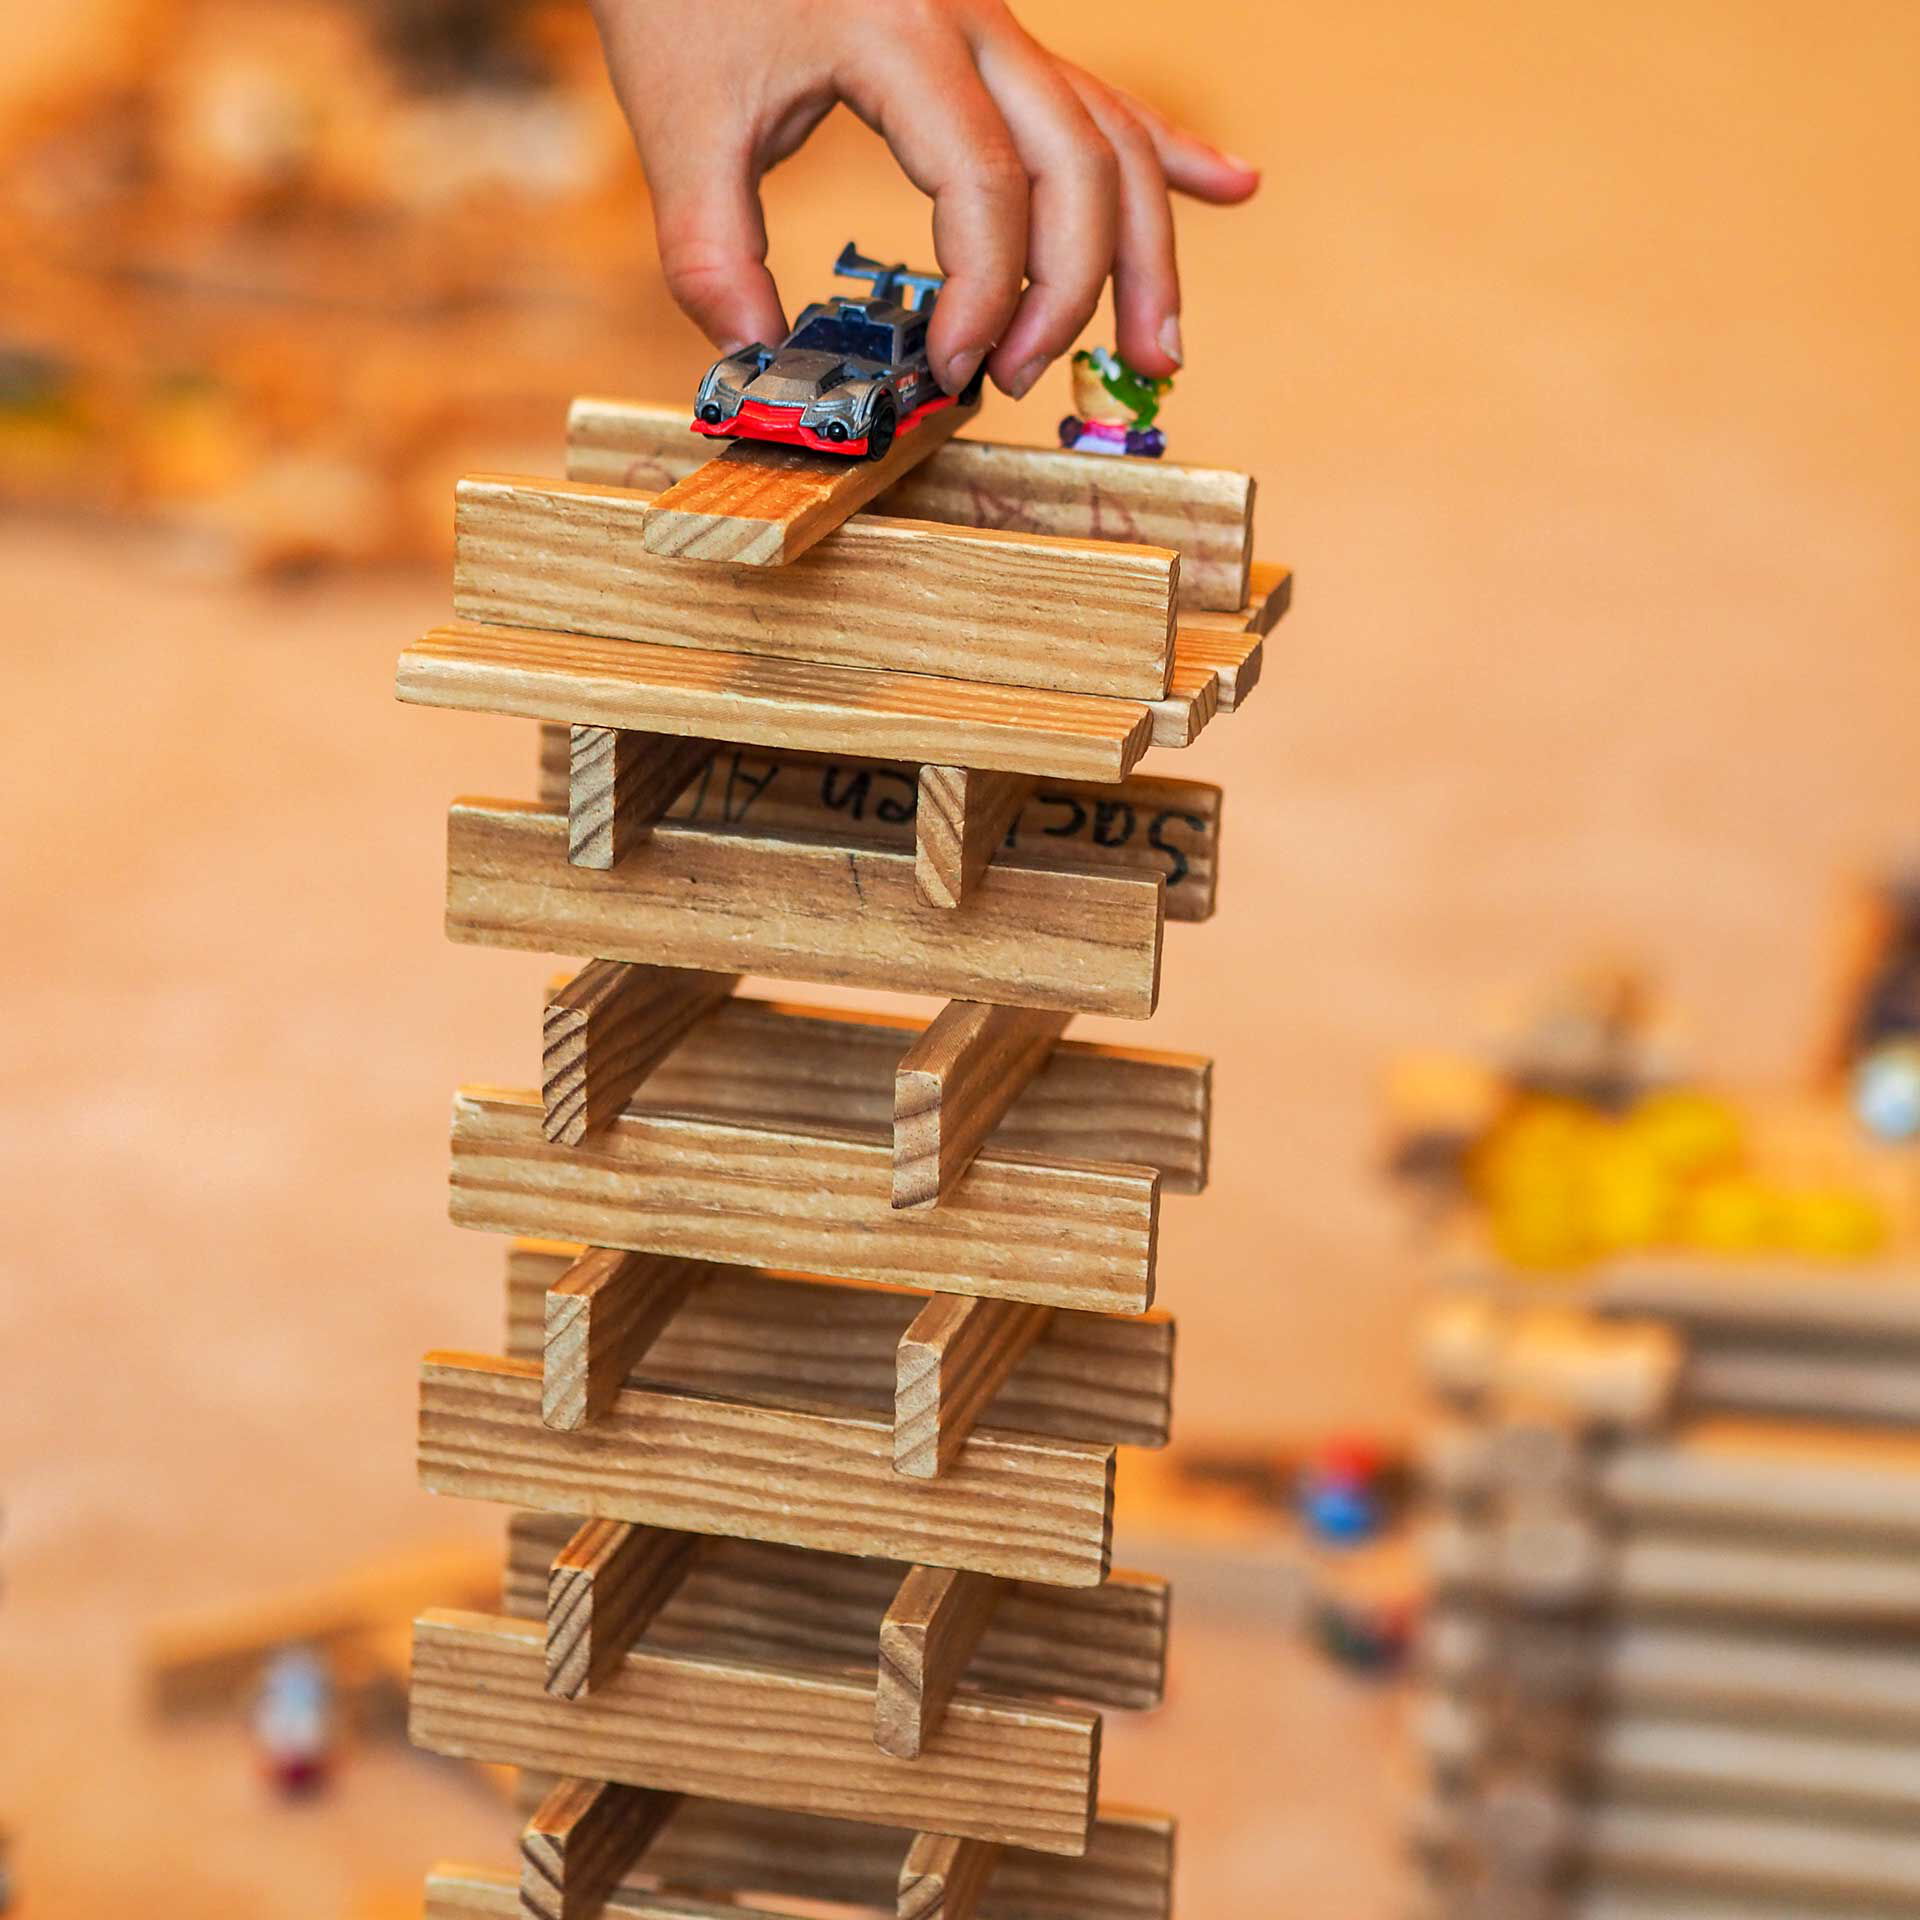 Ein selbst gebauter Turm aus flachen Holzbausteinen. Auf dem Dach wird von einem Kind ein Spielzeugauto abgestellt.